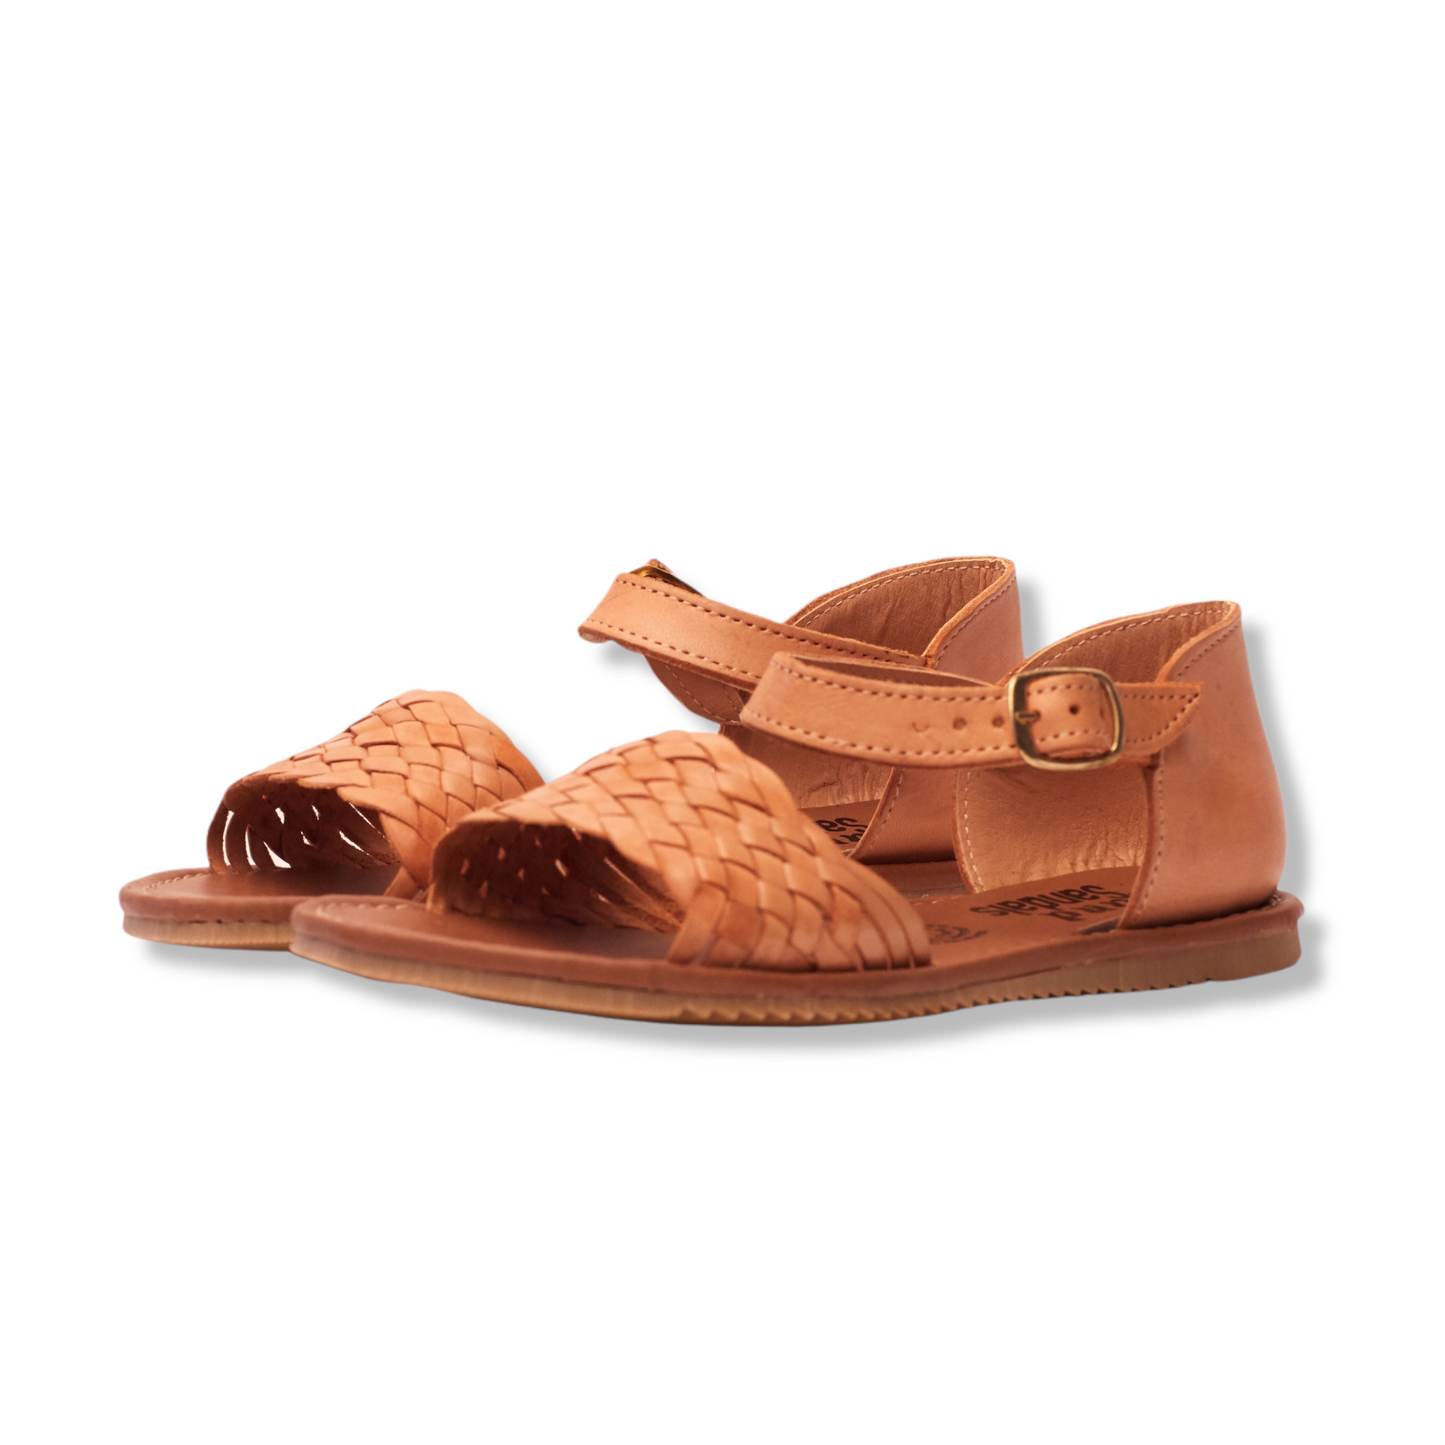 889/ Tan sandal